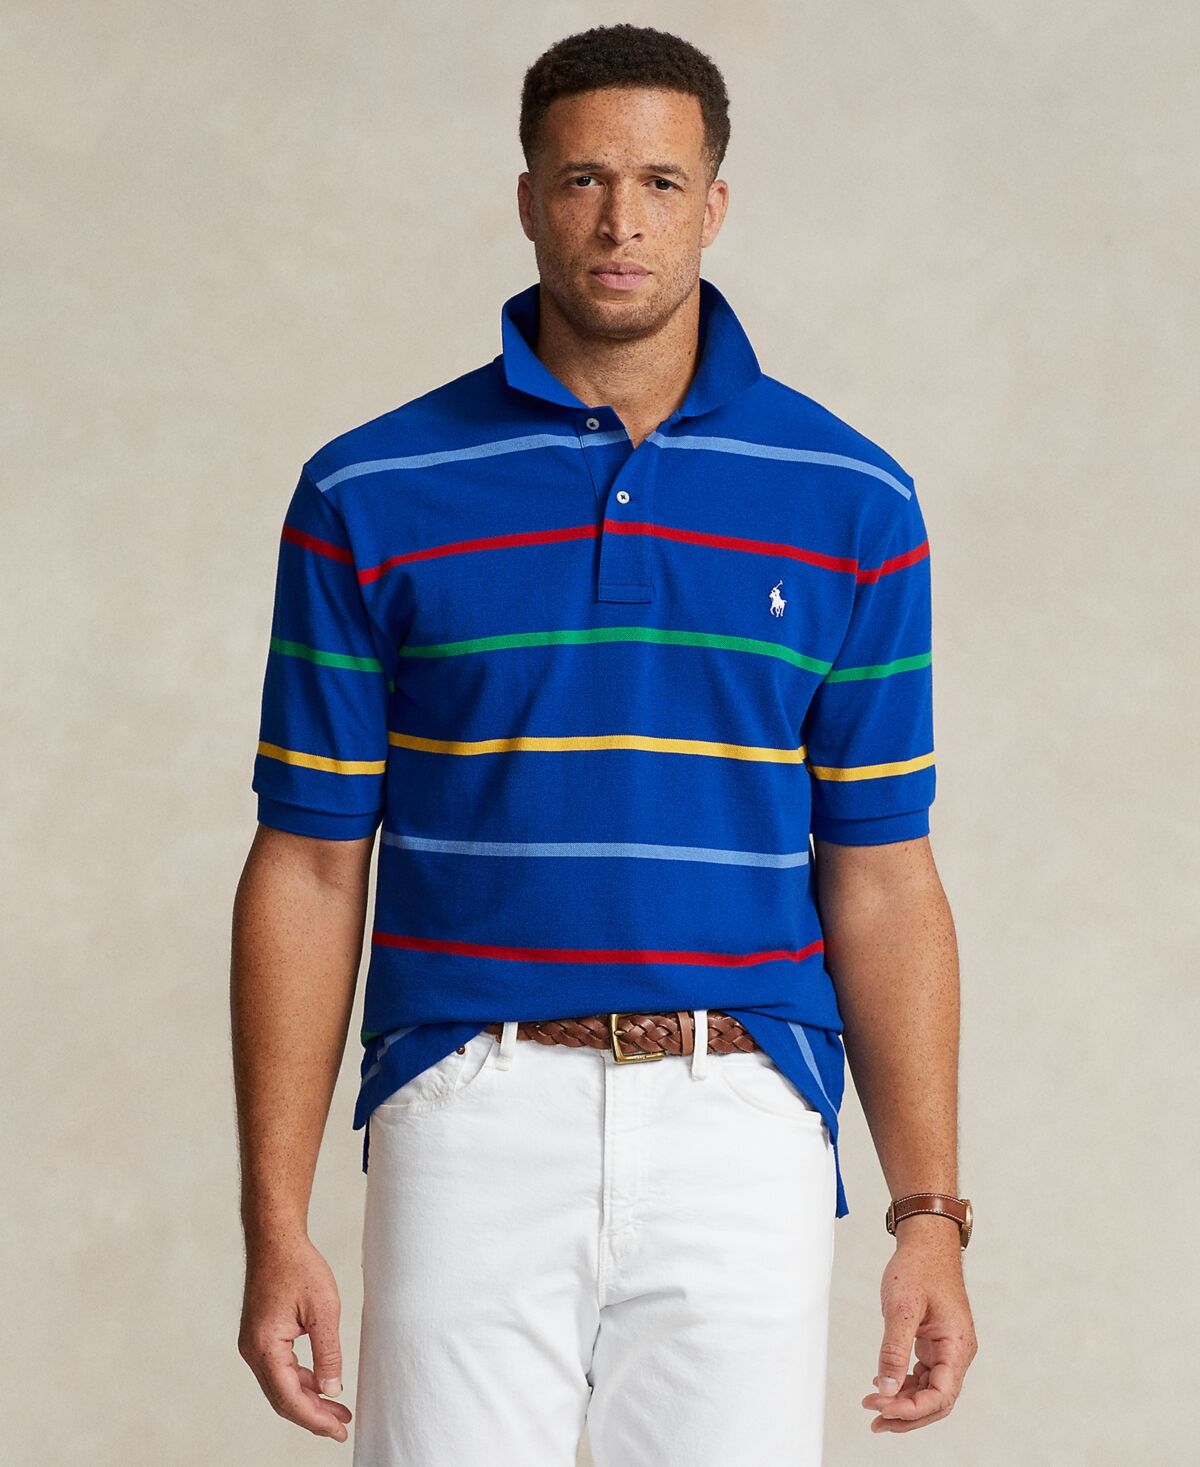 Ralph Lauren Polo Ralph Lauren Men's Big & Tall Striped Polo Shirt - Sapphire Star Multi